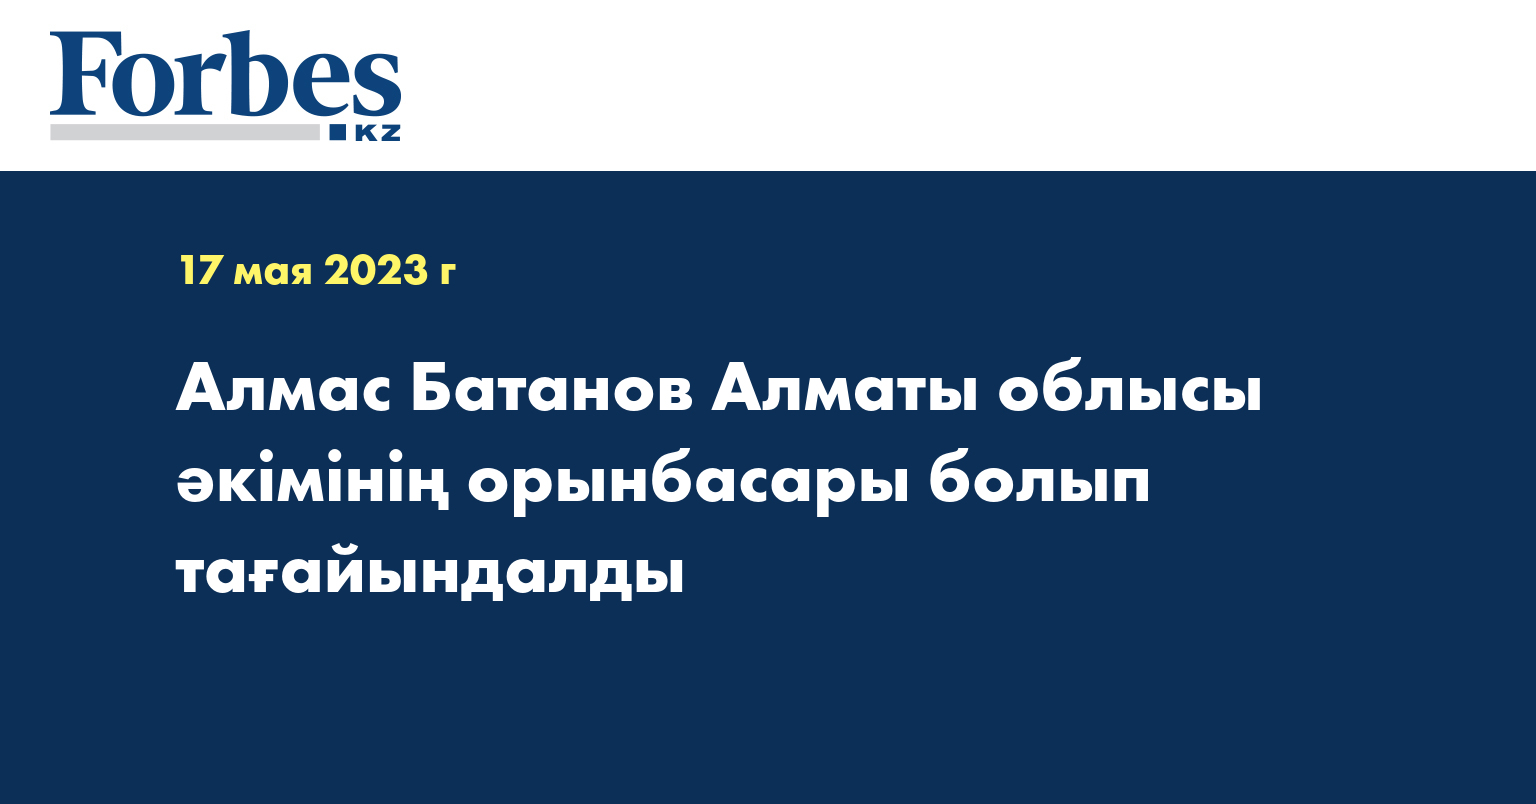 Алмас Батанов Алматы облысы әкімінің орынбасары болып тағайындалды